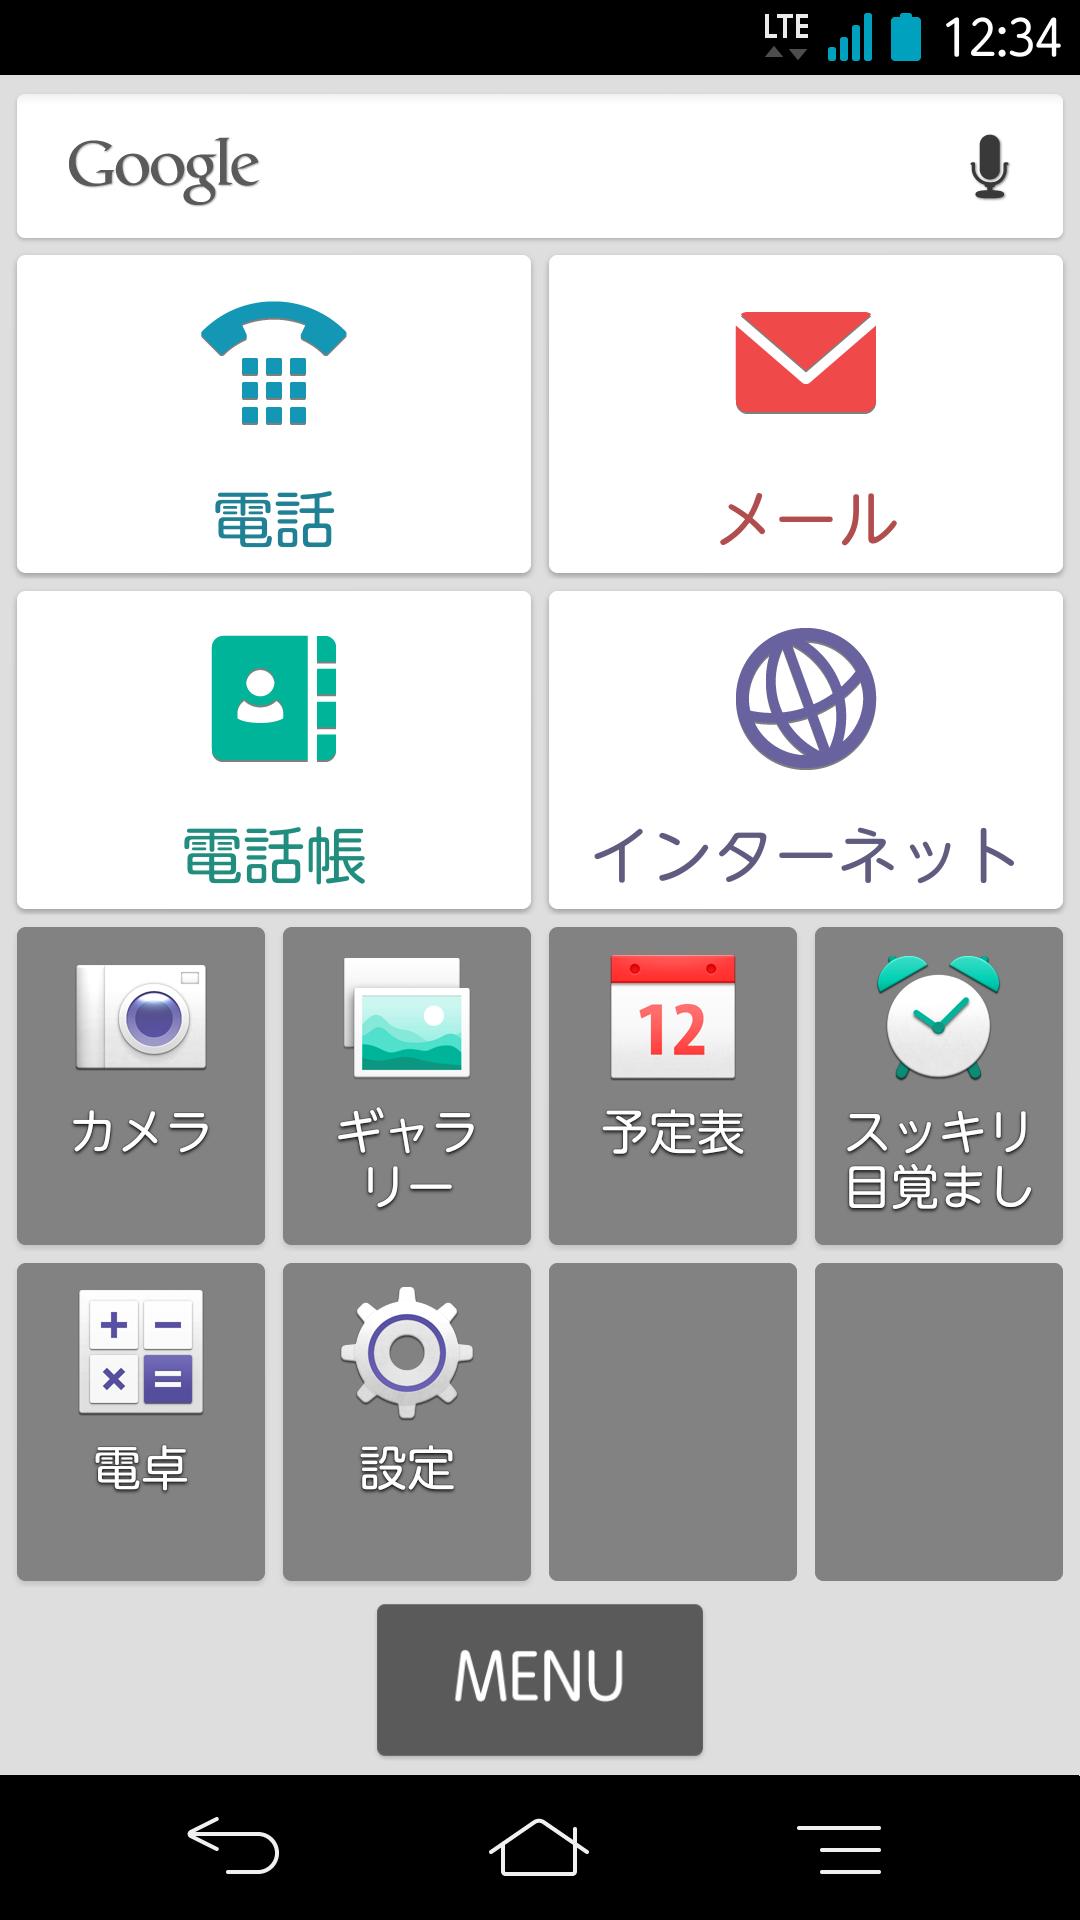 シンプルホーム For 富士通 Docomo版 For Android Apk Download